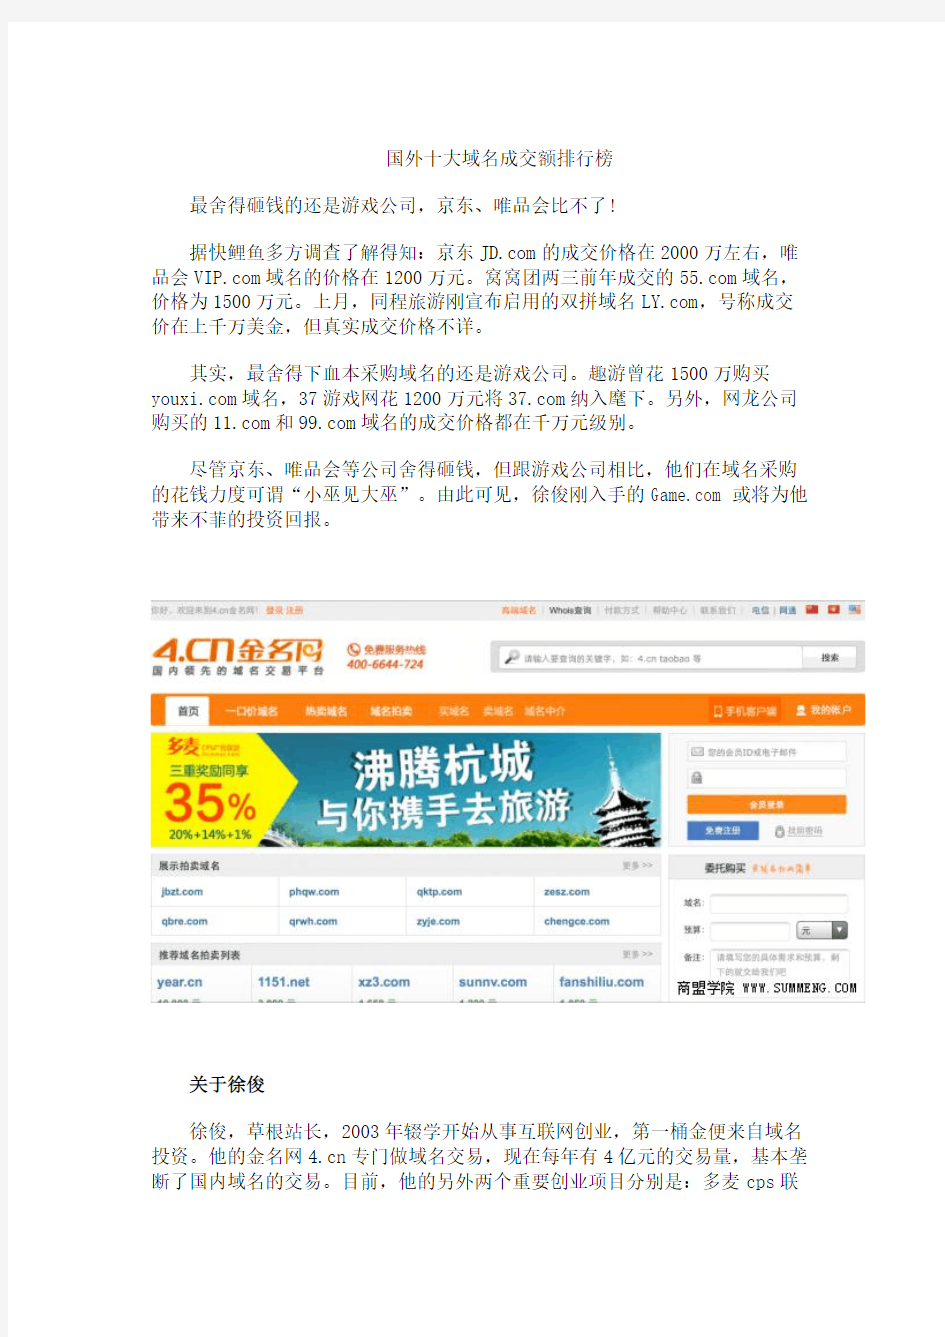 中国最贵域名交易案：4cn创始人徐俊买下价值超亿域名Gamecom ... ...